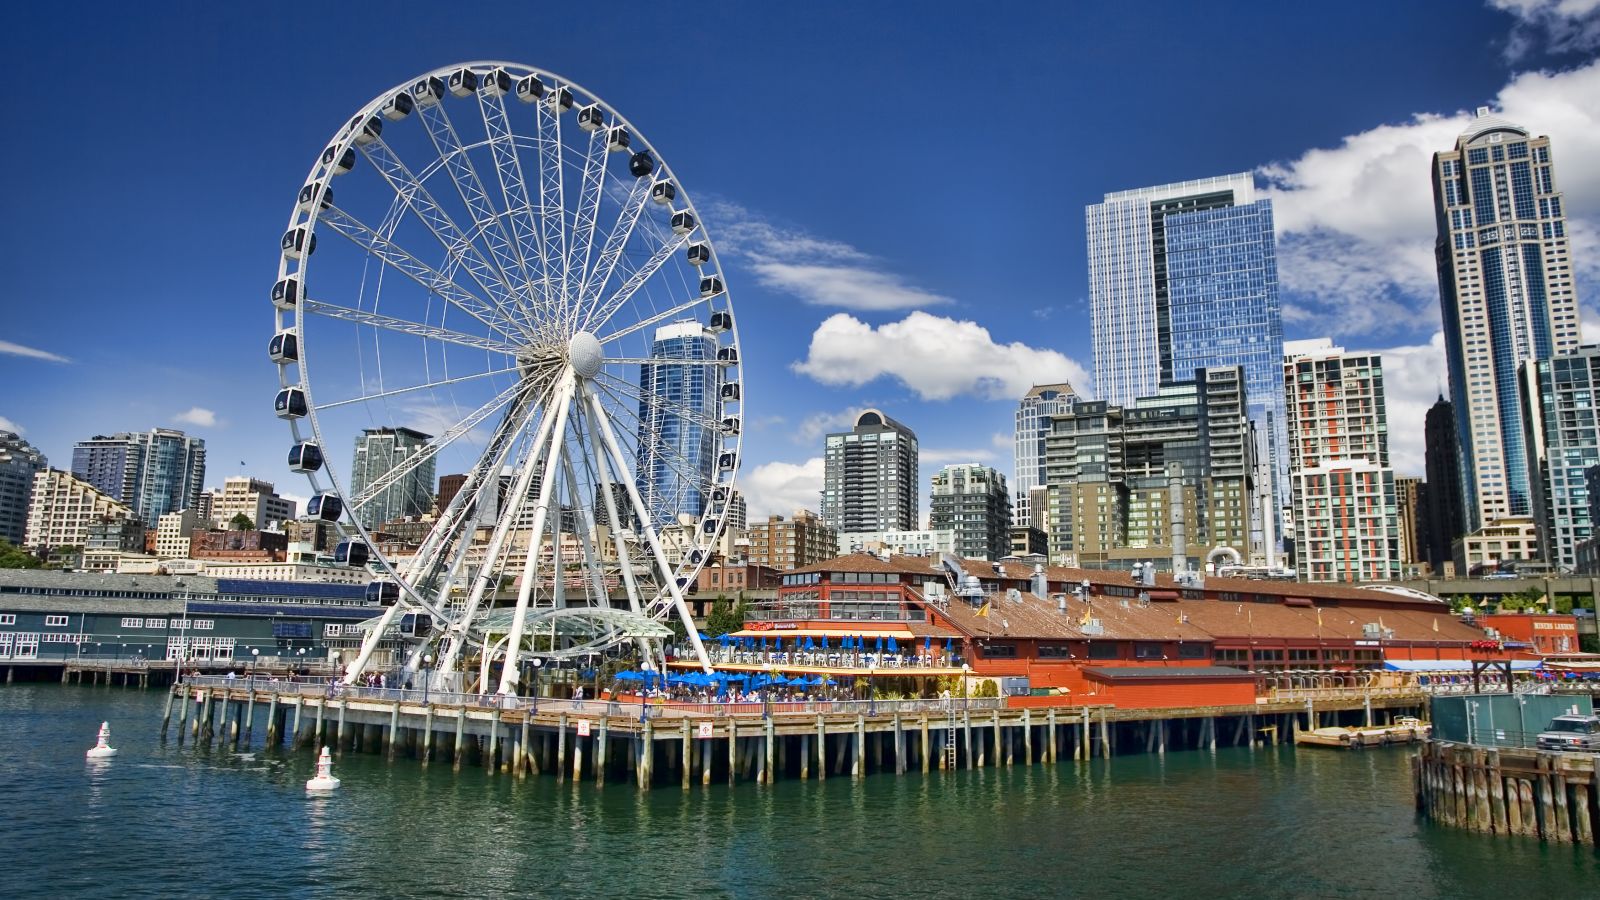 Seattle Ferris Wheel at Pier 57 | Seattle Great Wheel